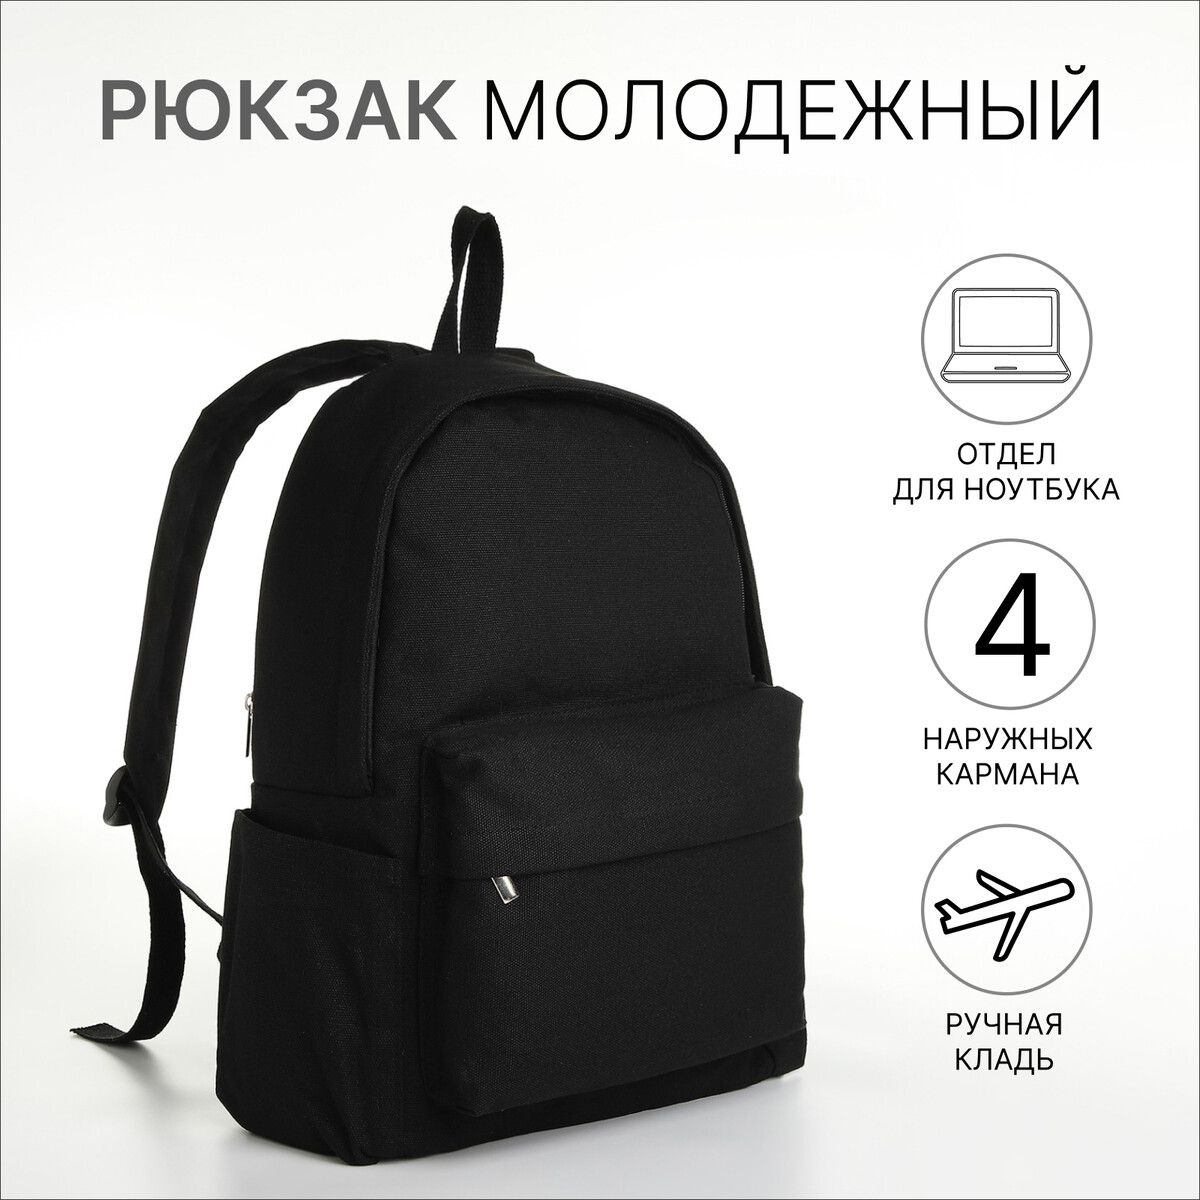 Рюкзак молодежный из текстиля на молнии, 4 кармана, цвет черный